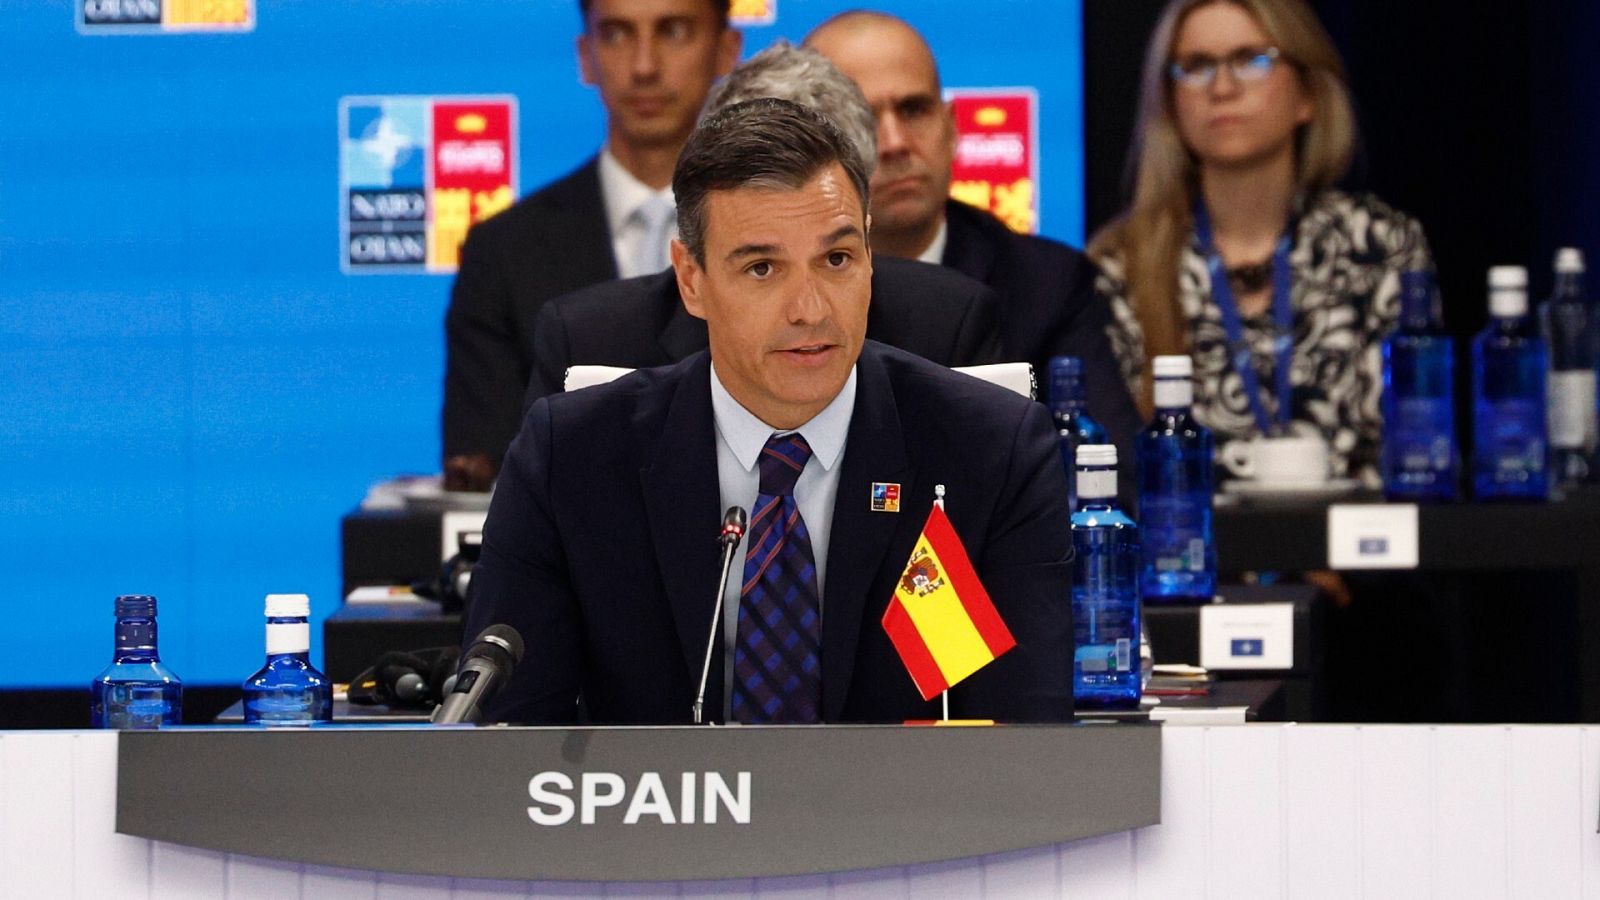 El presidente del Gobierno ha intervenido en la cumbre de la OTAN mientras la bandera de España estaba boca abajo